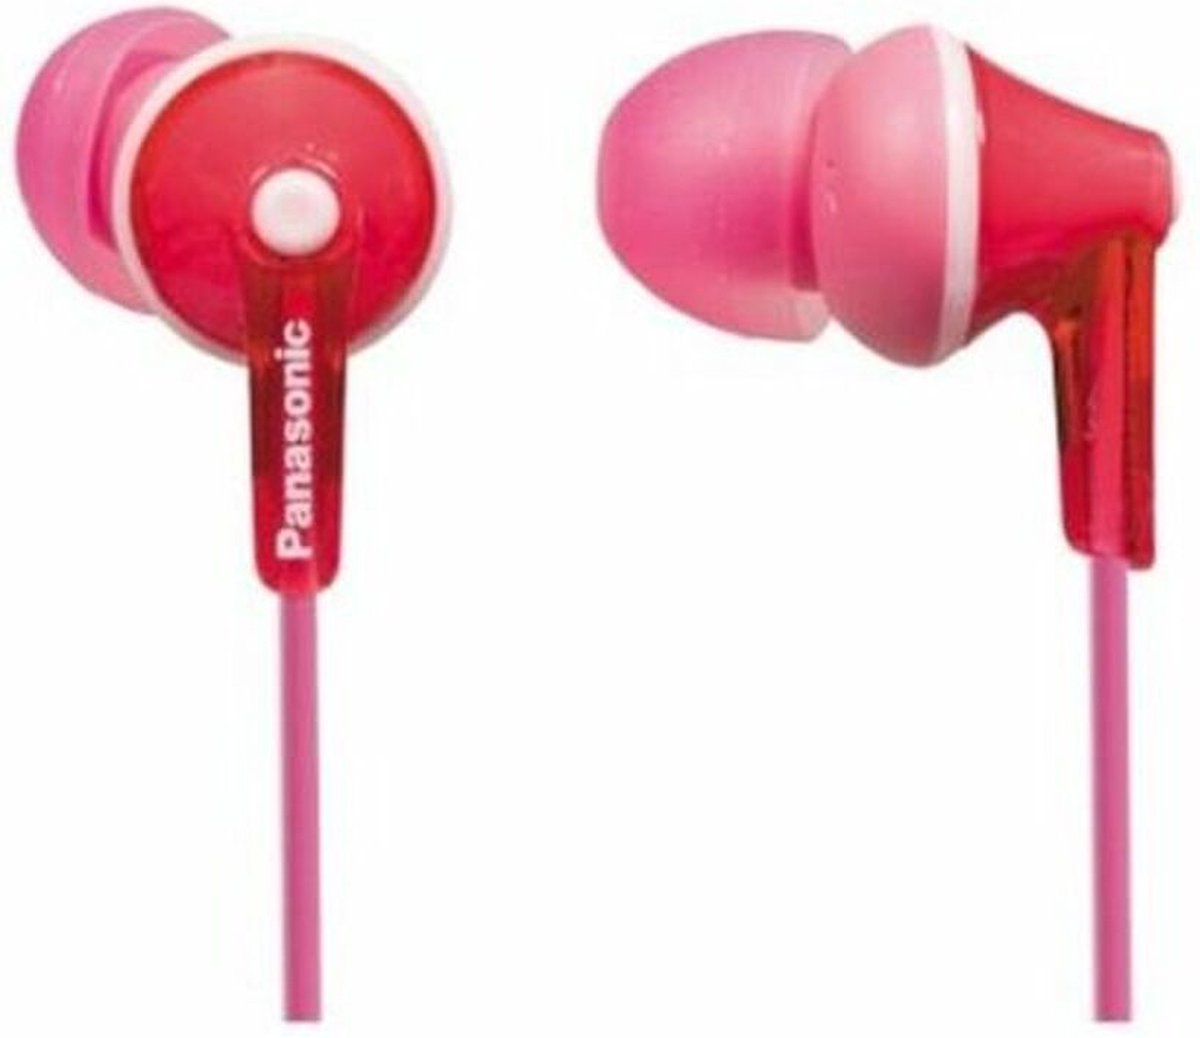 Panasonic RP-HJE125 - In-ear oordopjes - Roze